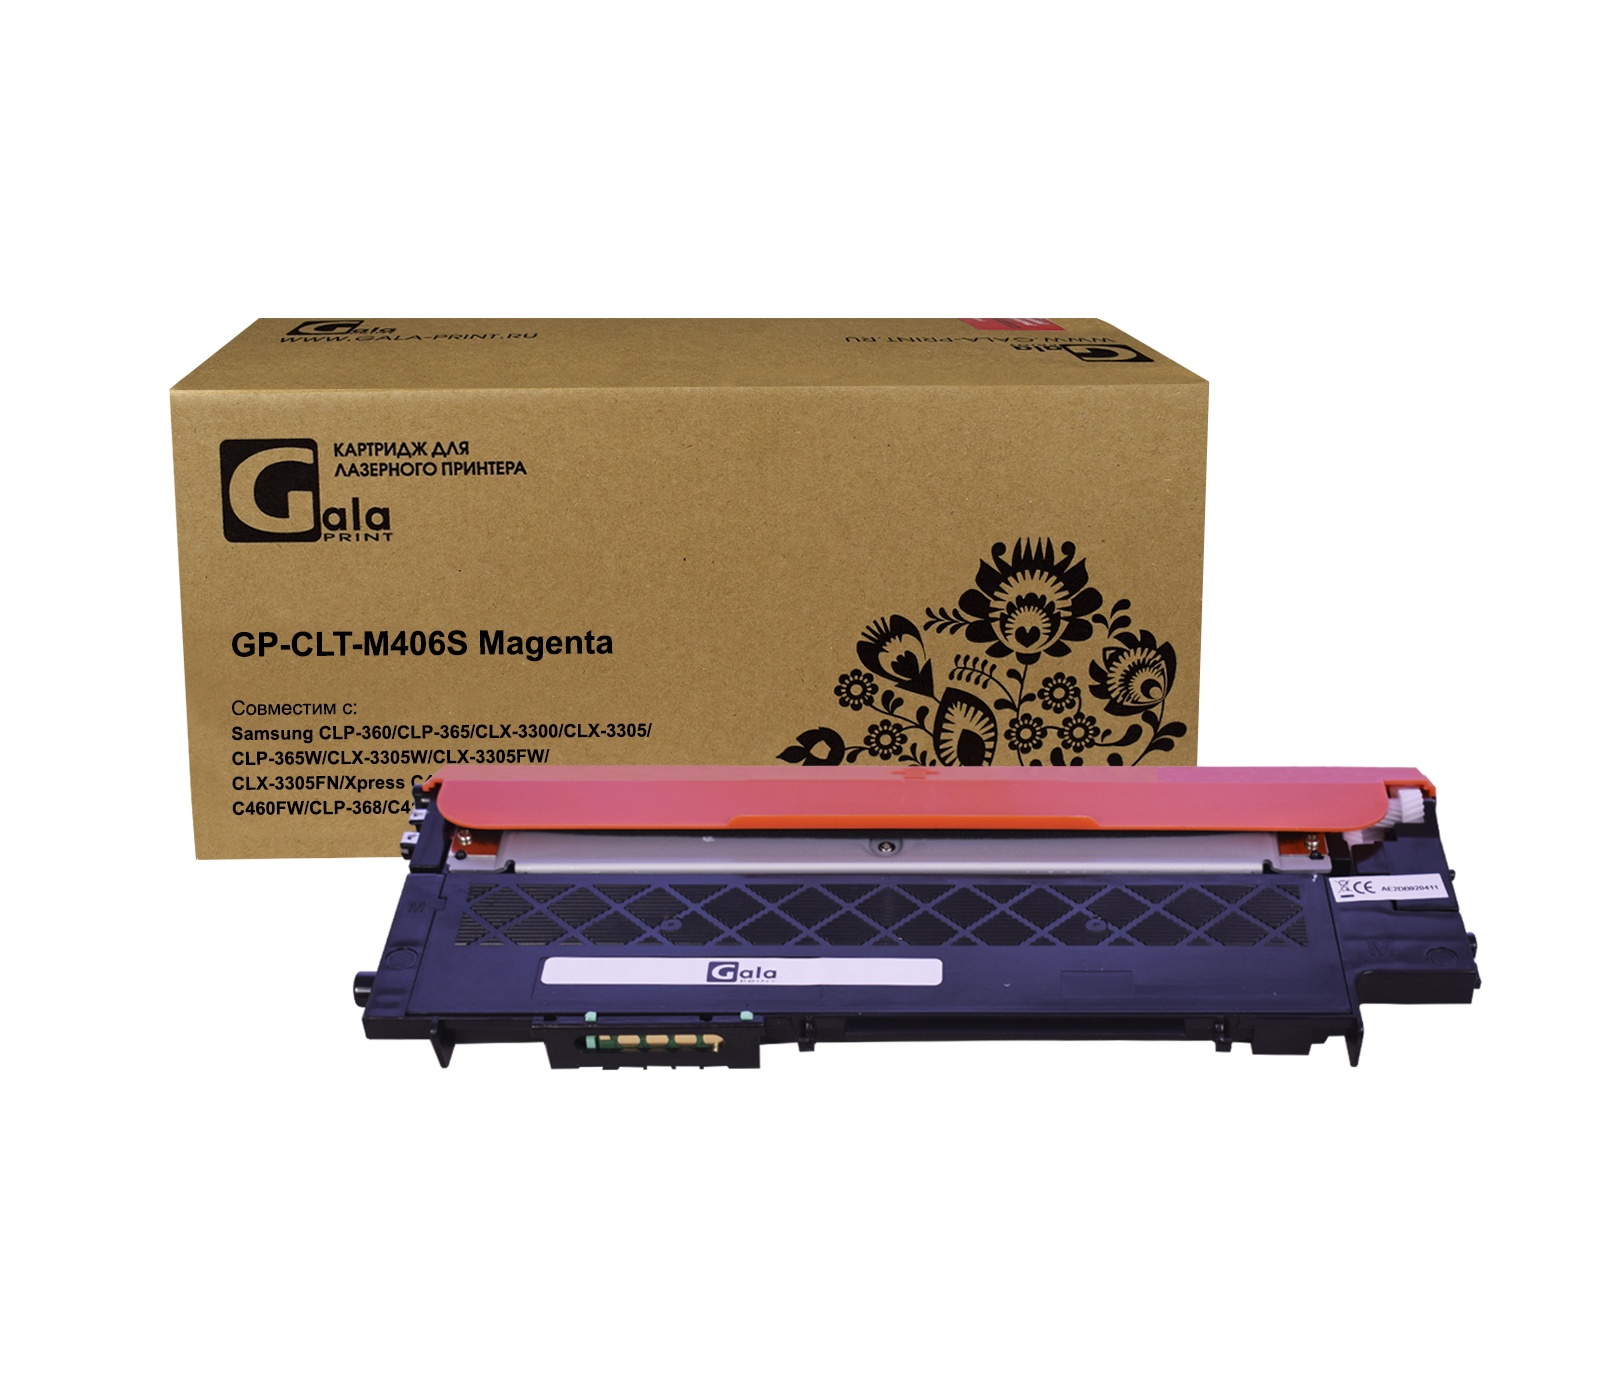 Картридж GP-CLT-M406S для принтеров Samsung CLP-360/CLP-365/CLX-3300/CLX-3305/CLP-365W/CLX-3305W/CLX-3305FW/CLX-3305FN/Xpress C410/C410w/C460W/C460FW/CLP-368/C410/C460 Magenta 1000 копий GalaPrint